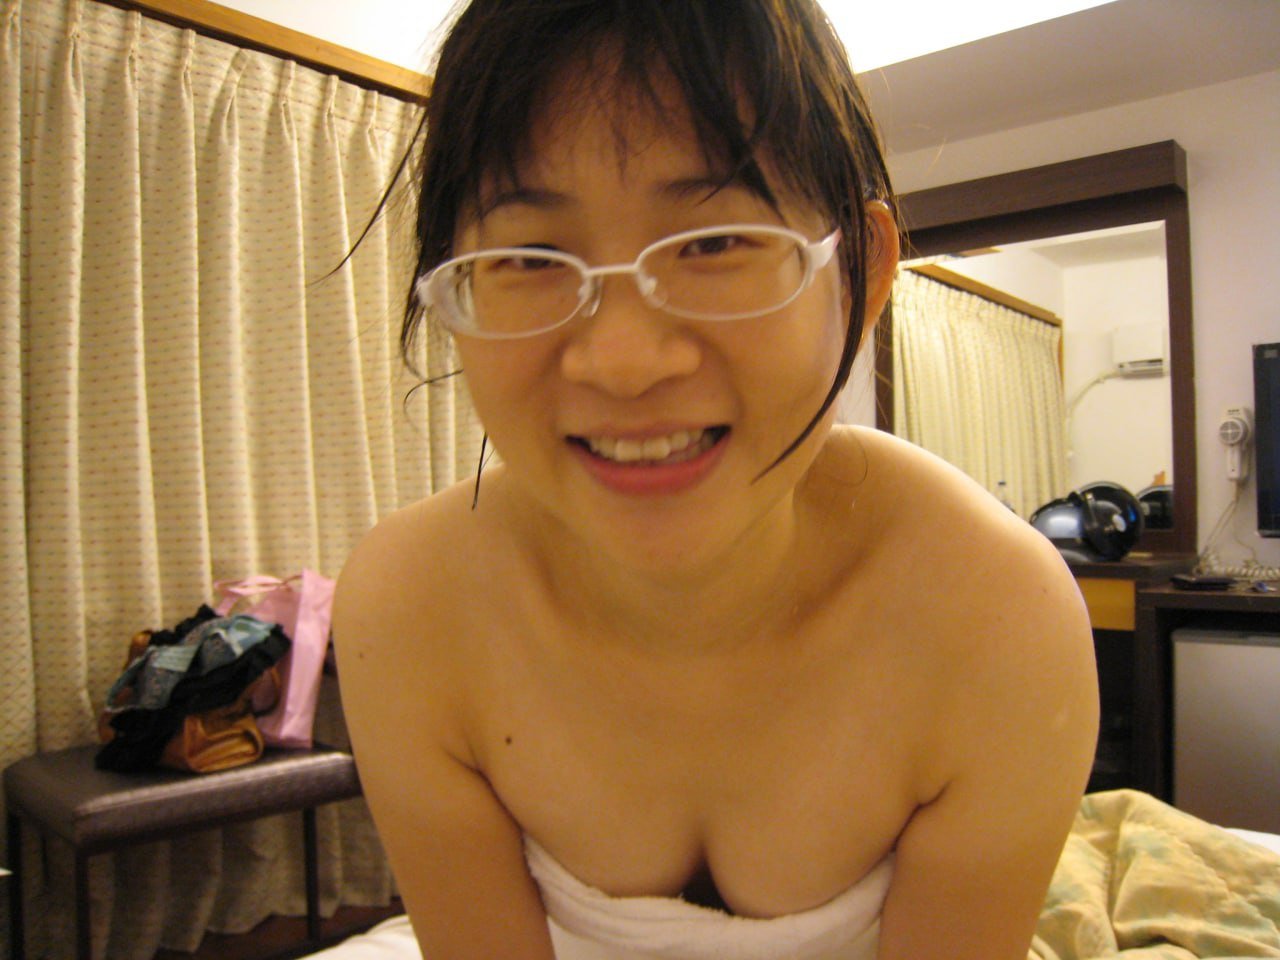 Homely Asian Porn - Ugly Asian nude - Porn Videos & Photos - EroMe